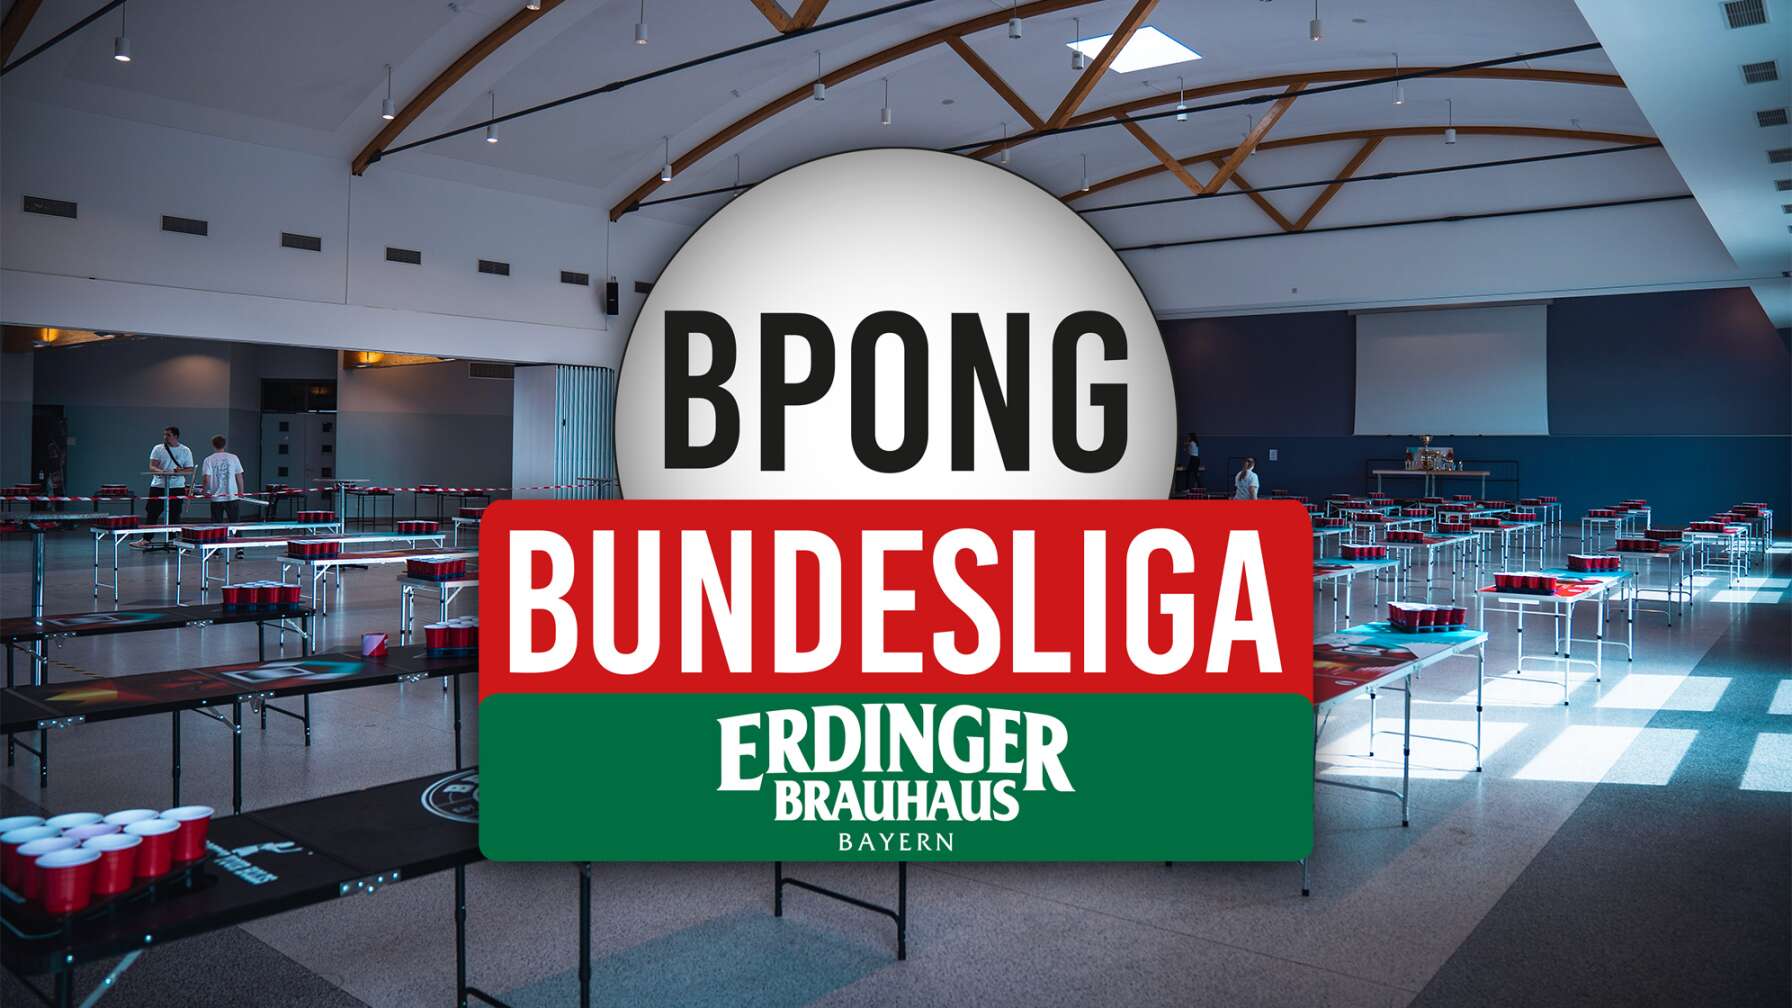 Beer Pong Tische aufgereiht in einer Halle, darüber das Logo "BPong Bundesliga"